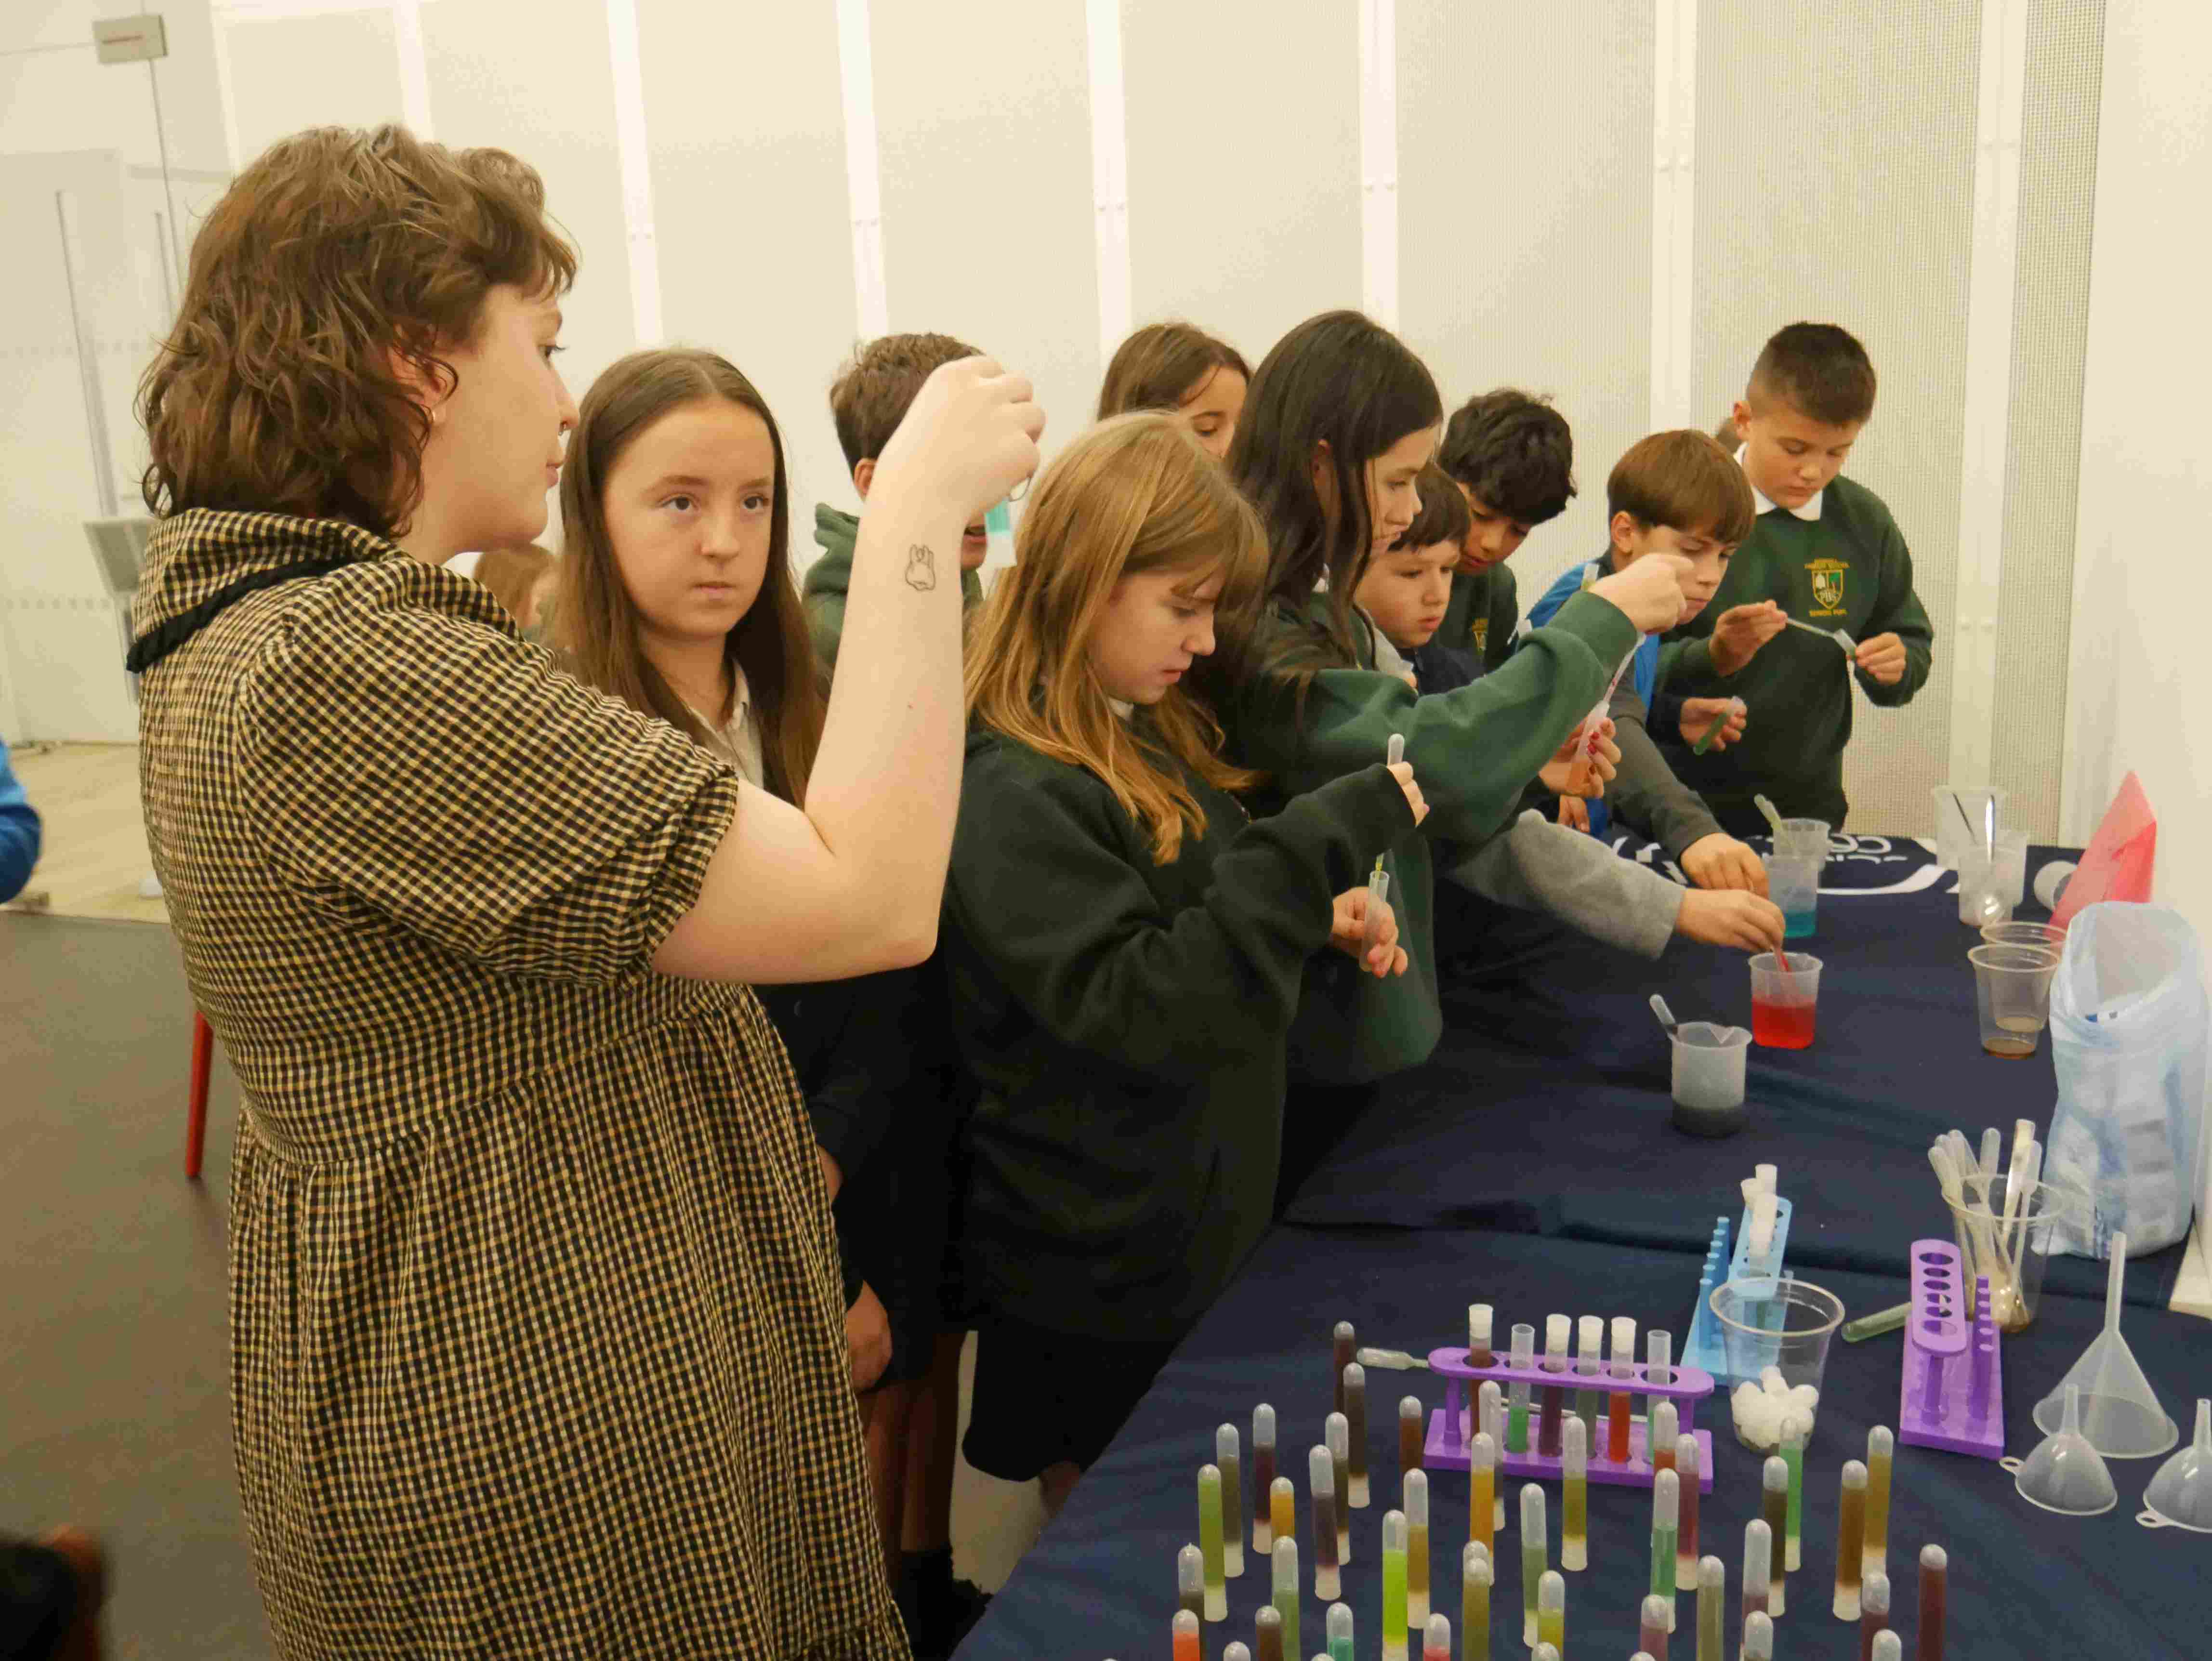 Schoolchildren taking part in Tartan science activities